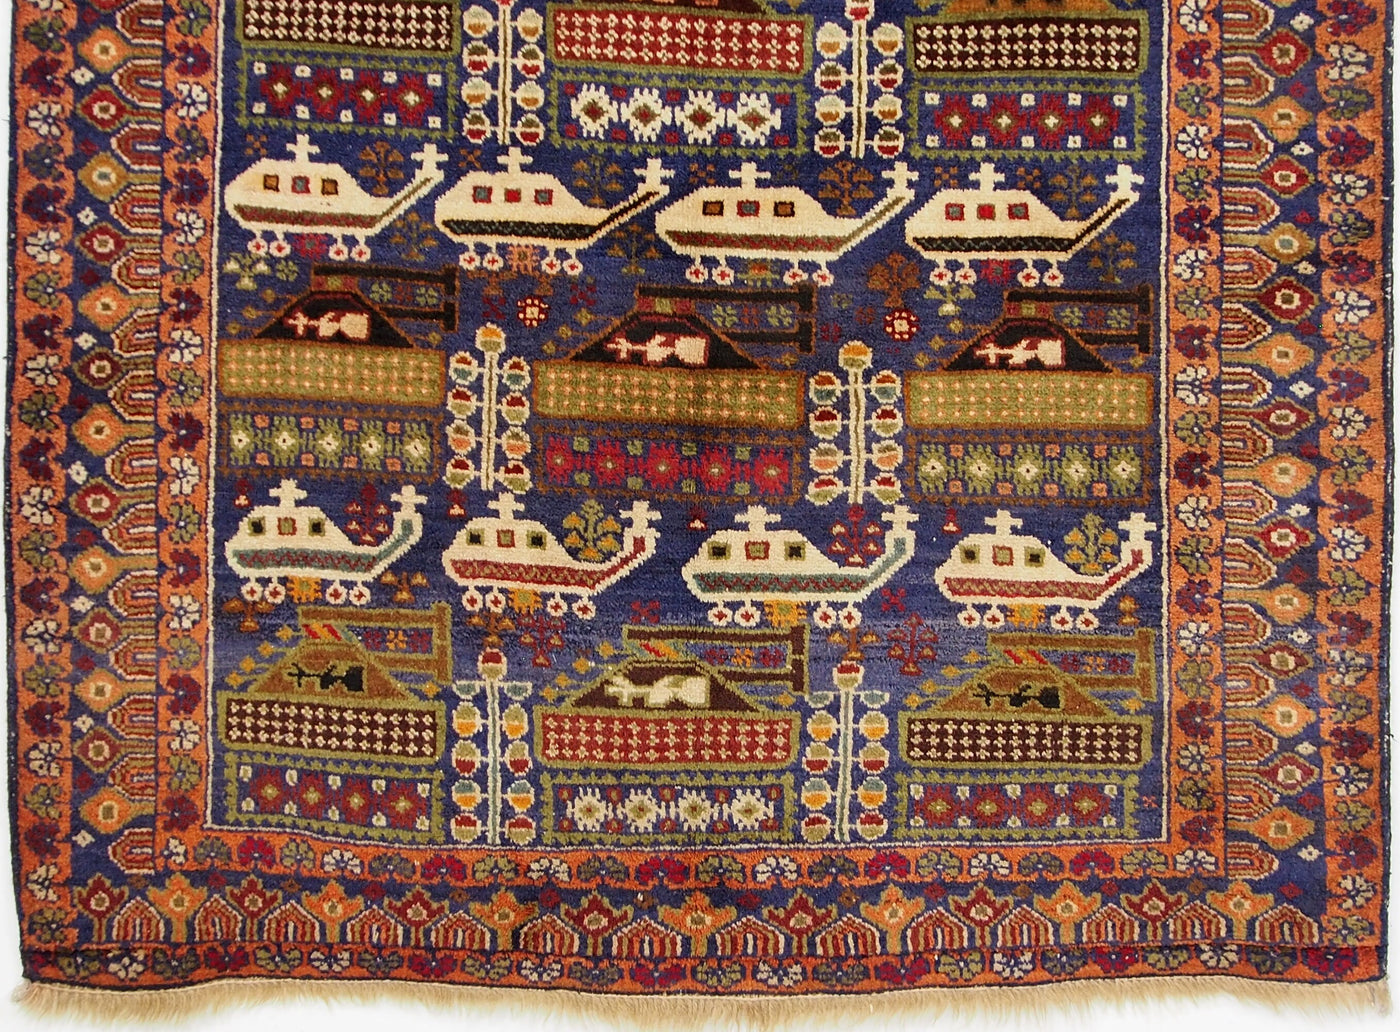 195x111 cm original Afghan beloch nomaden Kriegteppich Bildteppiche von Russische Einmarsch in Afghanistan NR-14/5  Orientsbazar   